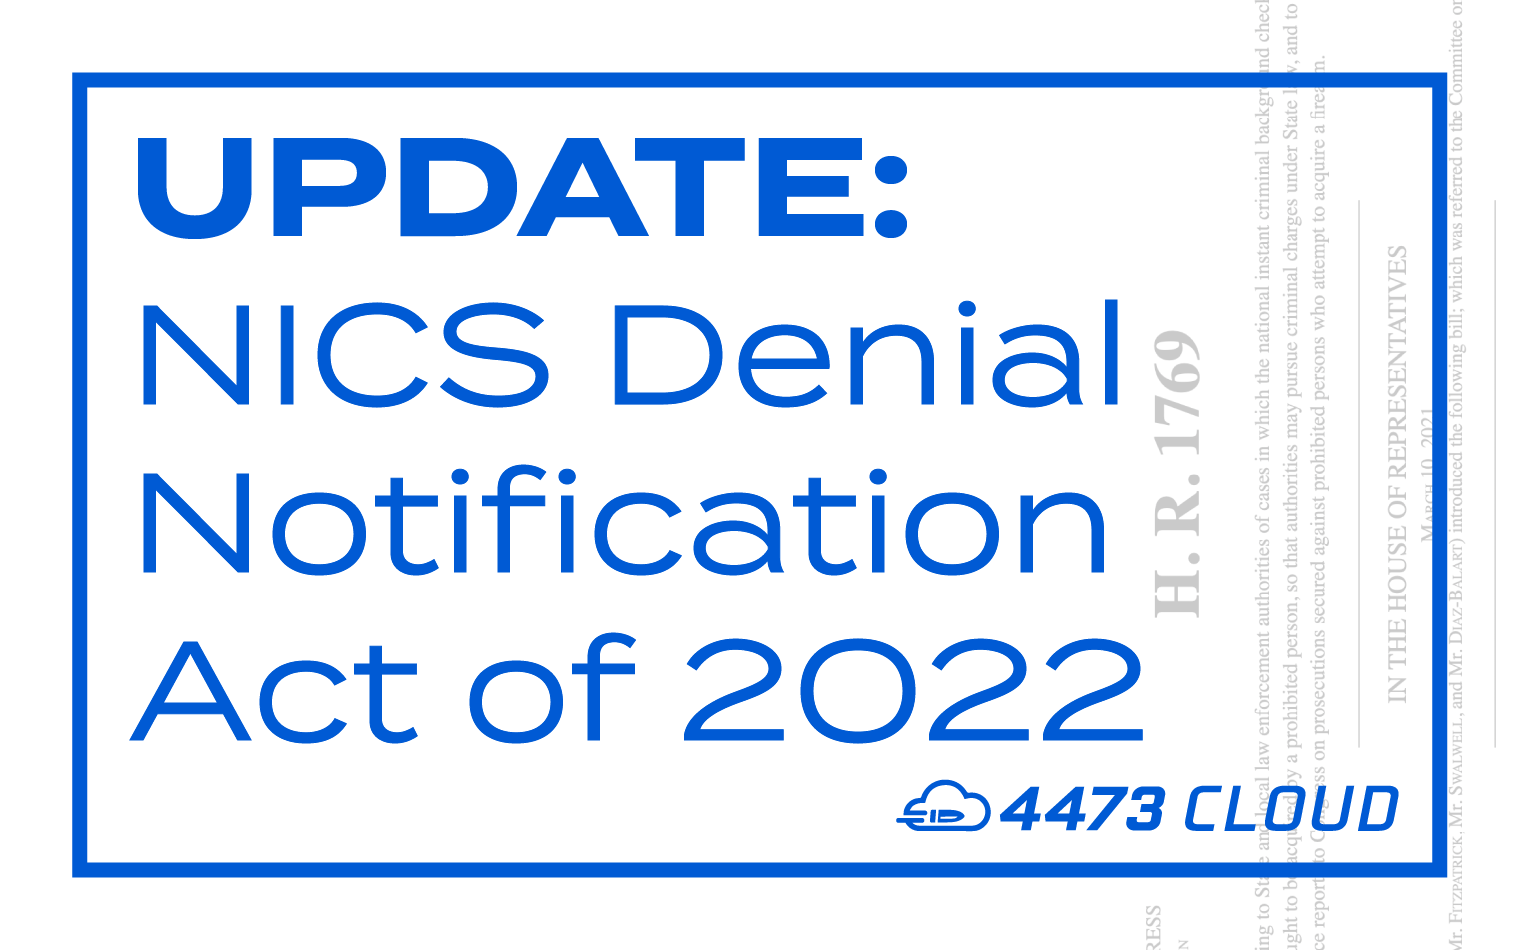 NICS Denial Notification Act of 2022 - 4473 Cloud